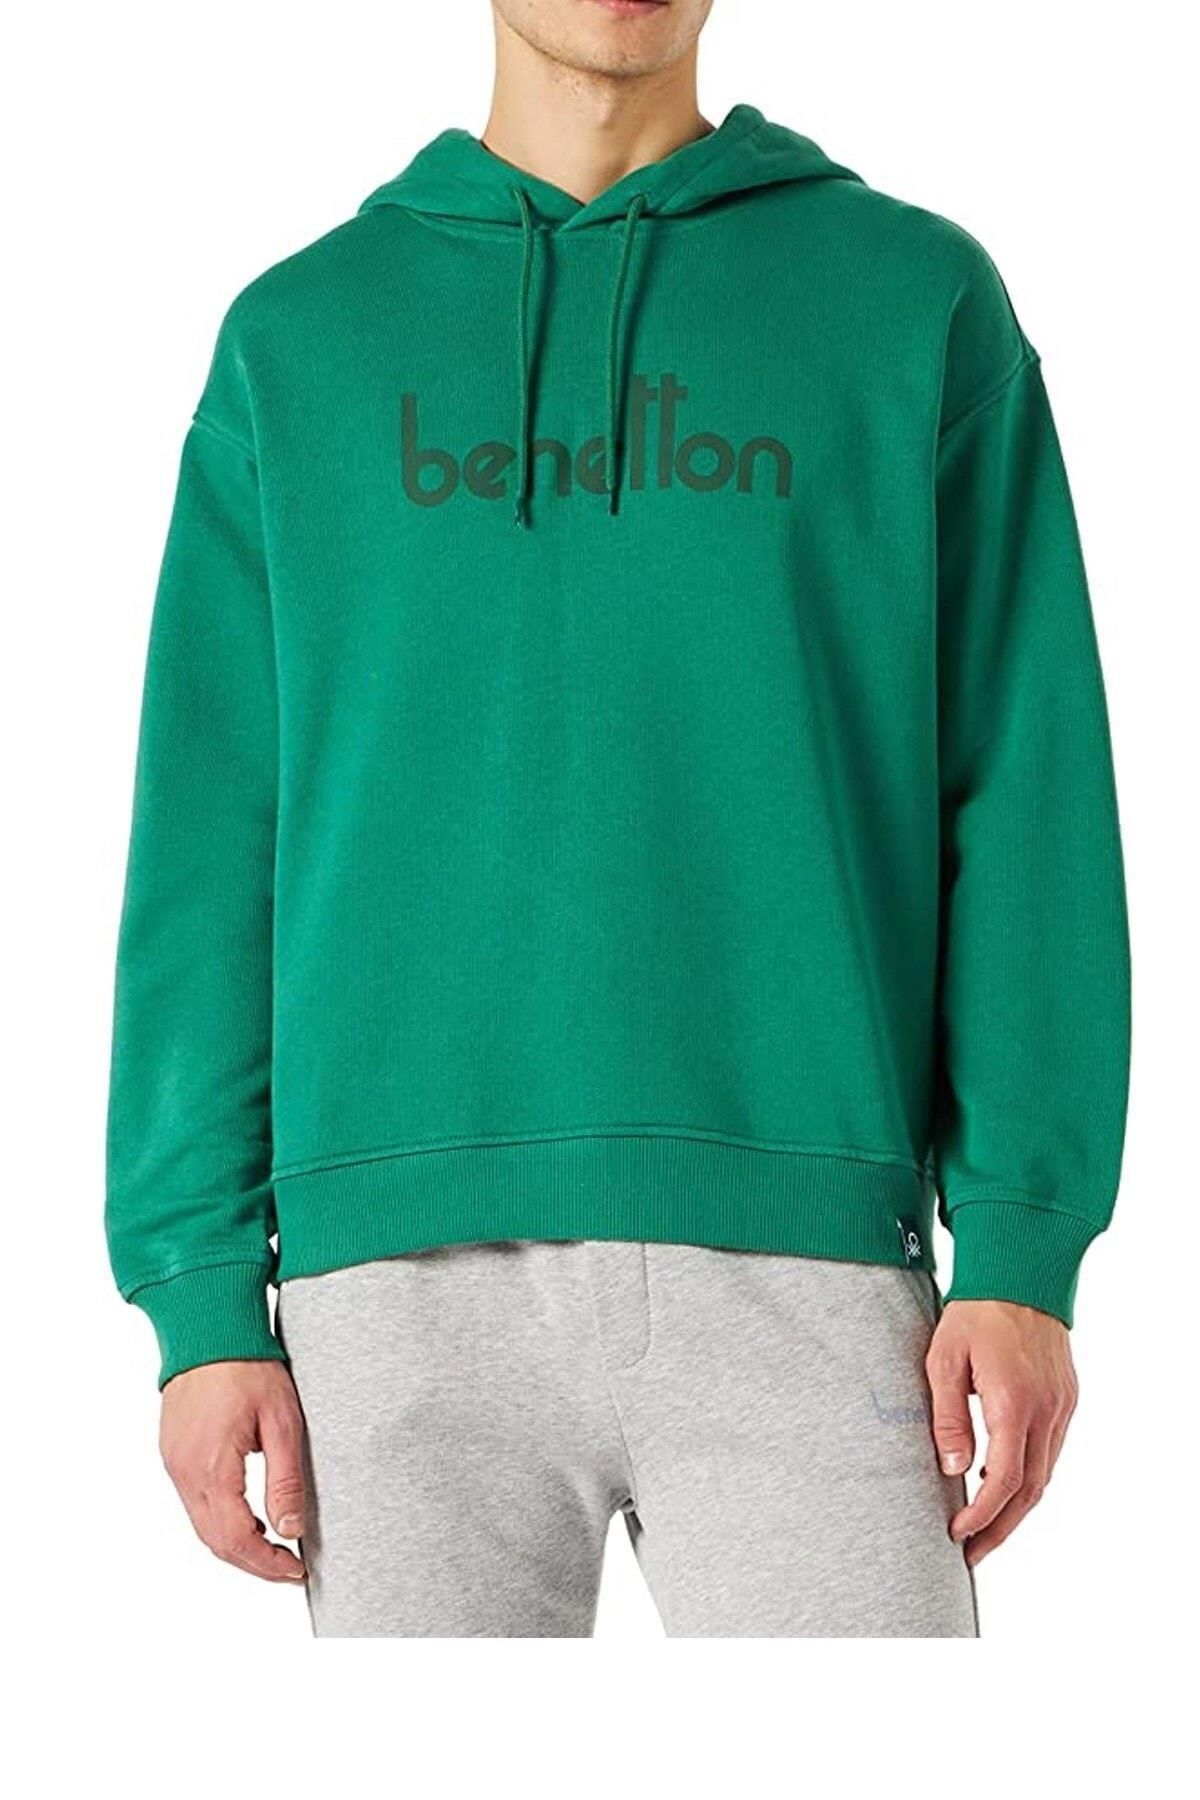 Benetton Erk Smu_kapşonlu Fermuarlı Sweatshirt